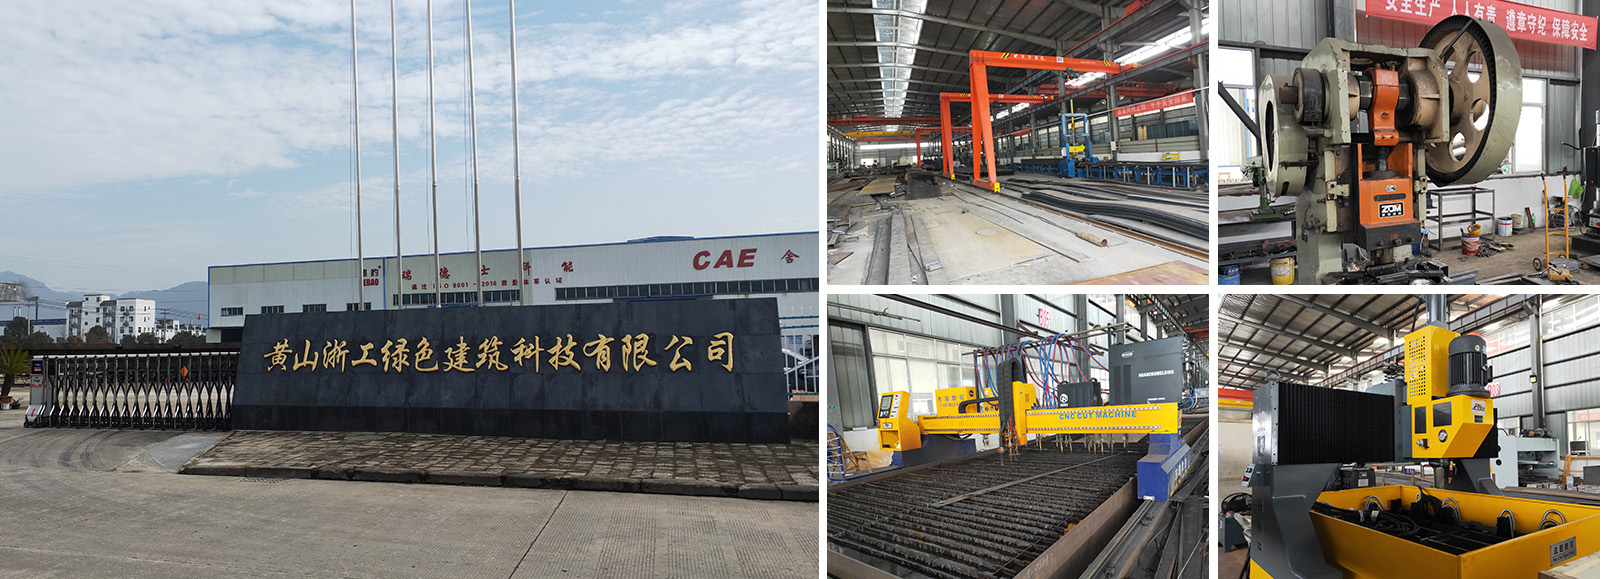 杭州万达钢结构有限公司